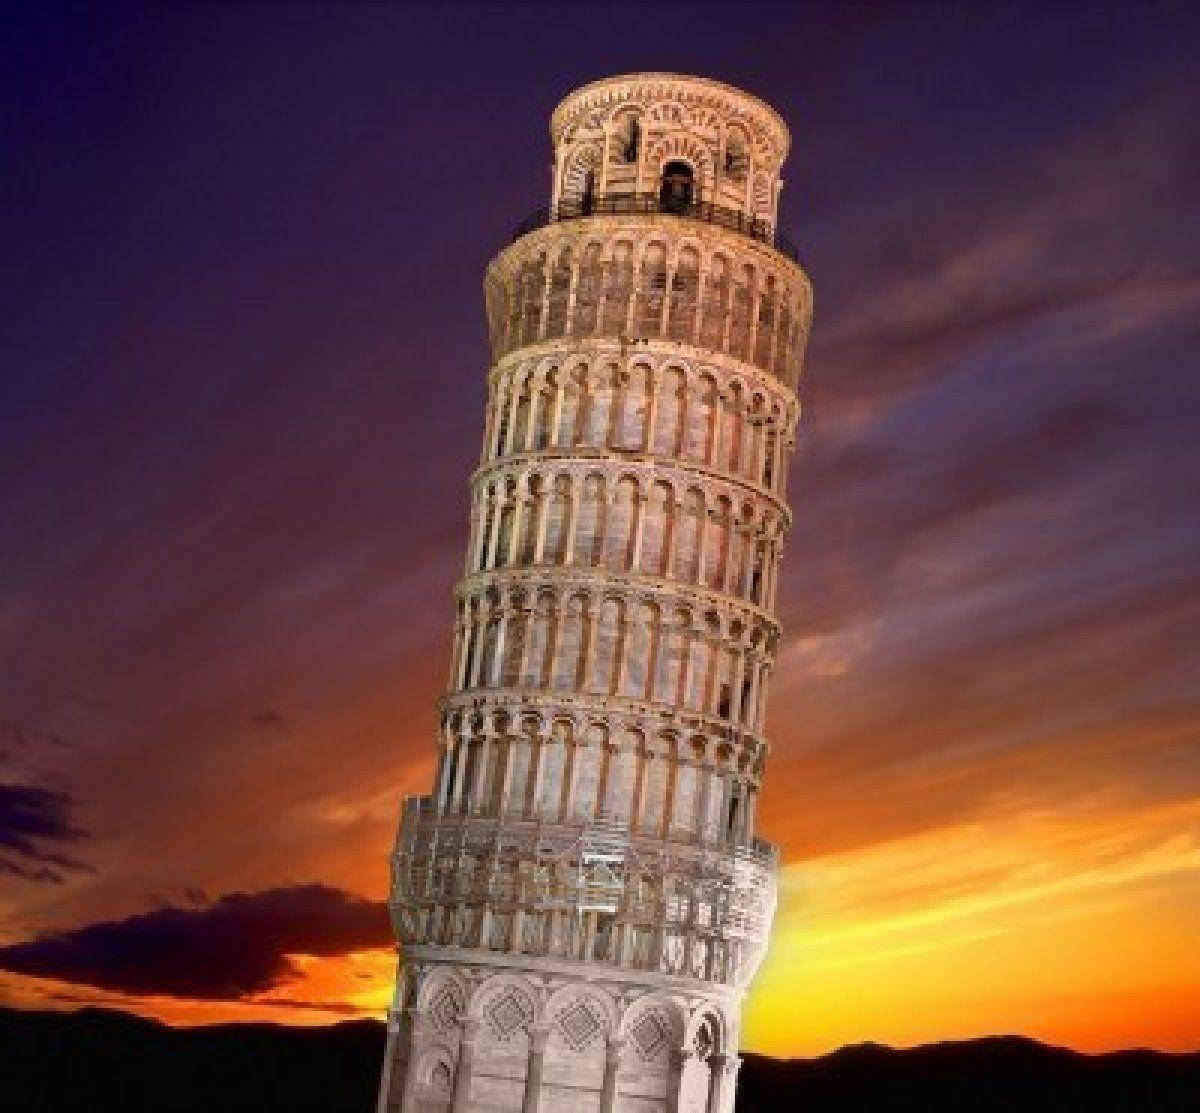 Derschiefe Turm Von Pisa Bei Sonnenuntergang. Wallpaper